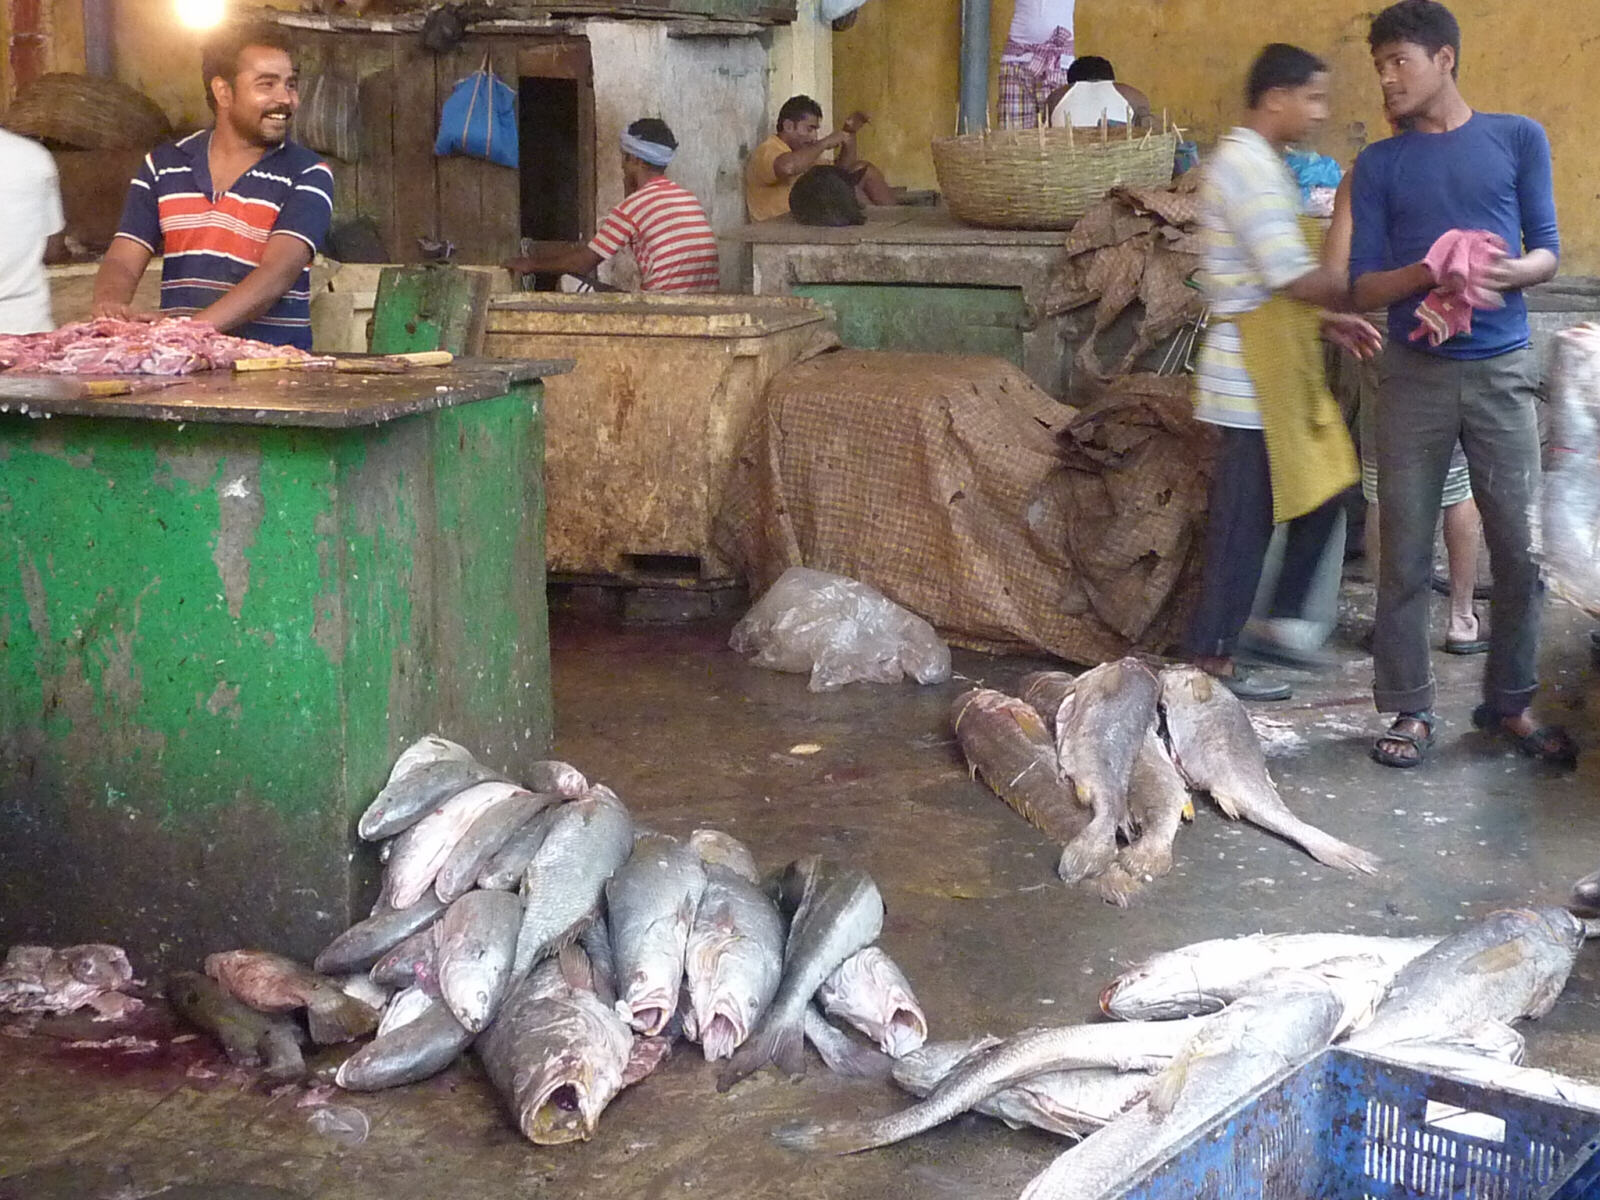 In the fish market in Calcutta, India